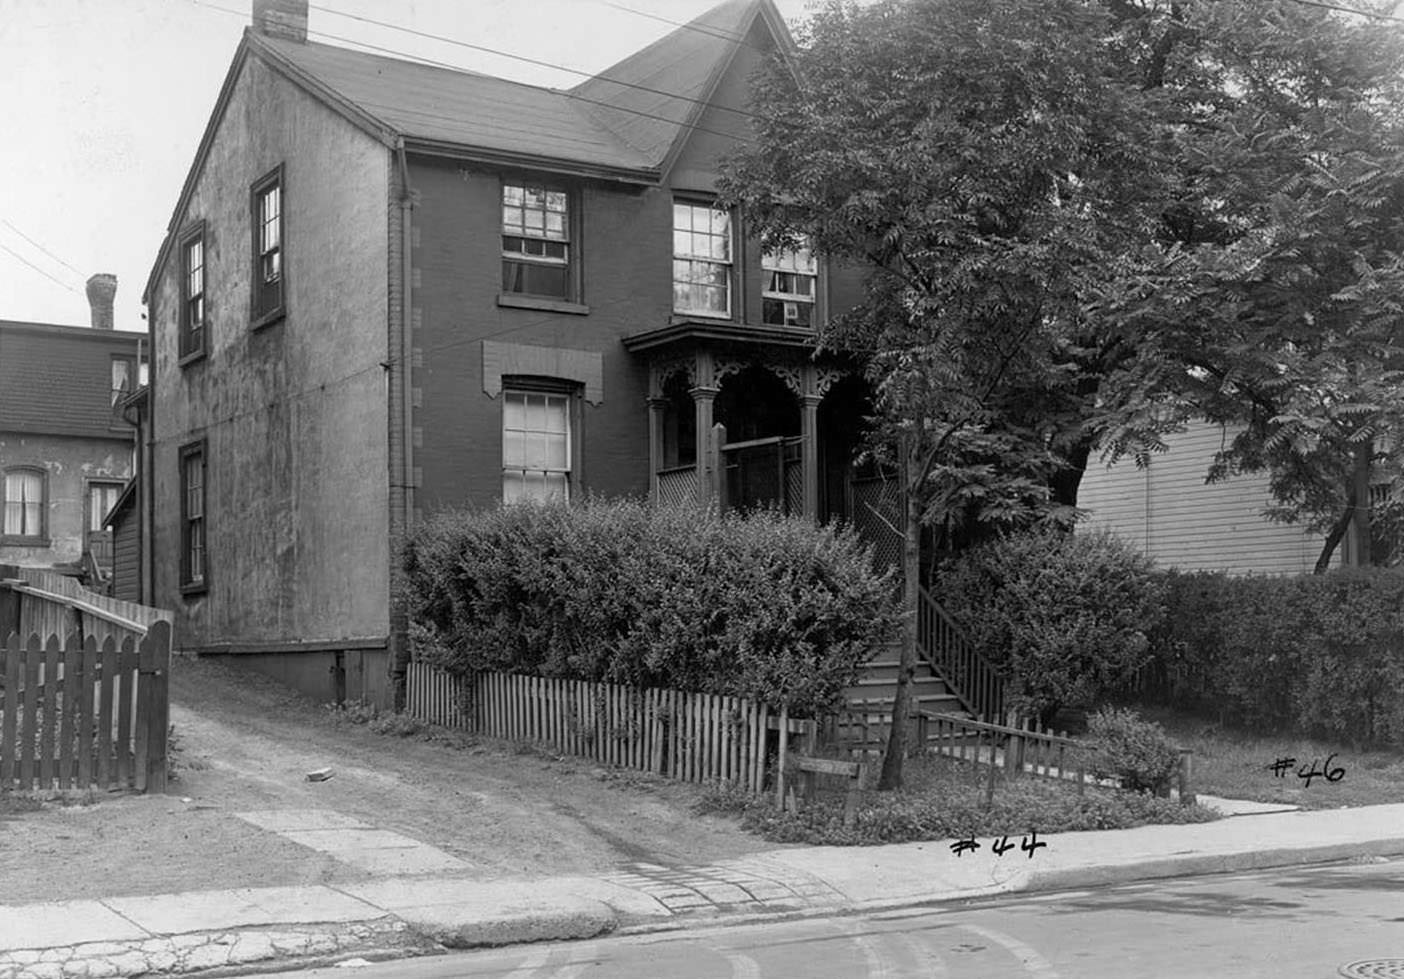 44-46 Oak Street - Aug. 17, 1949